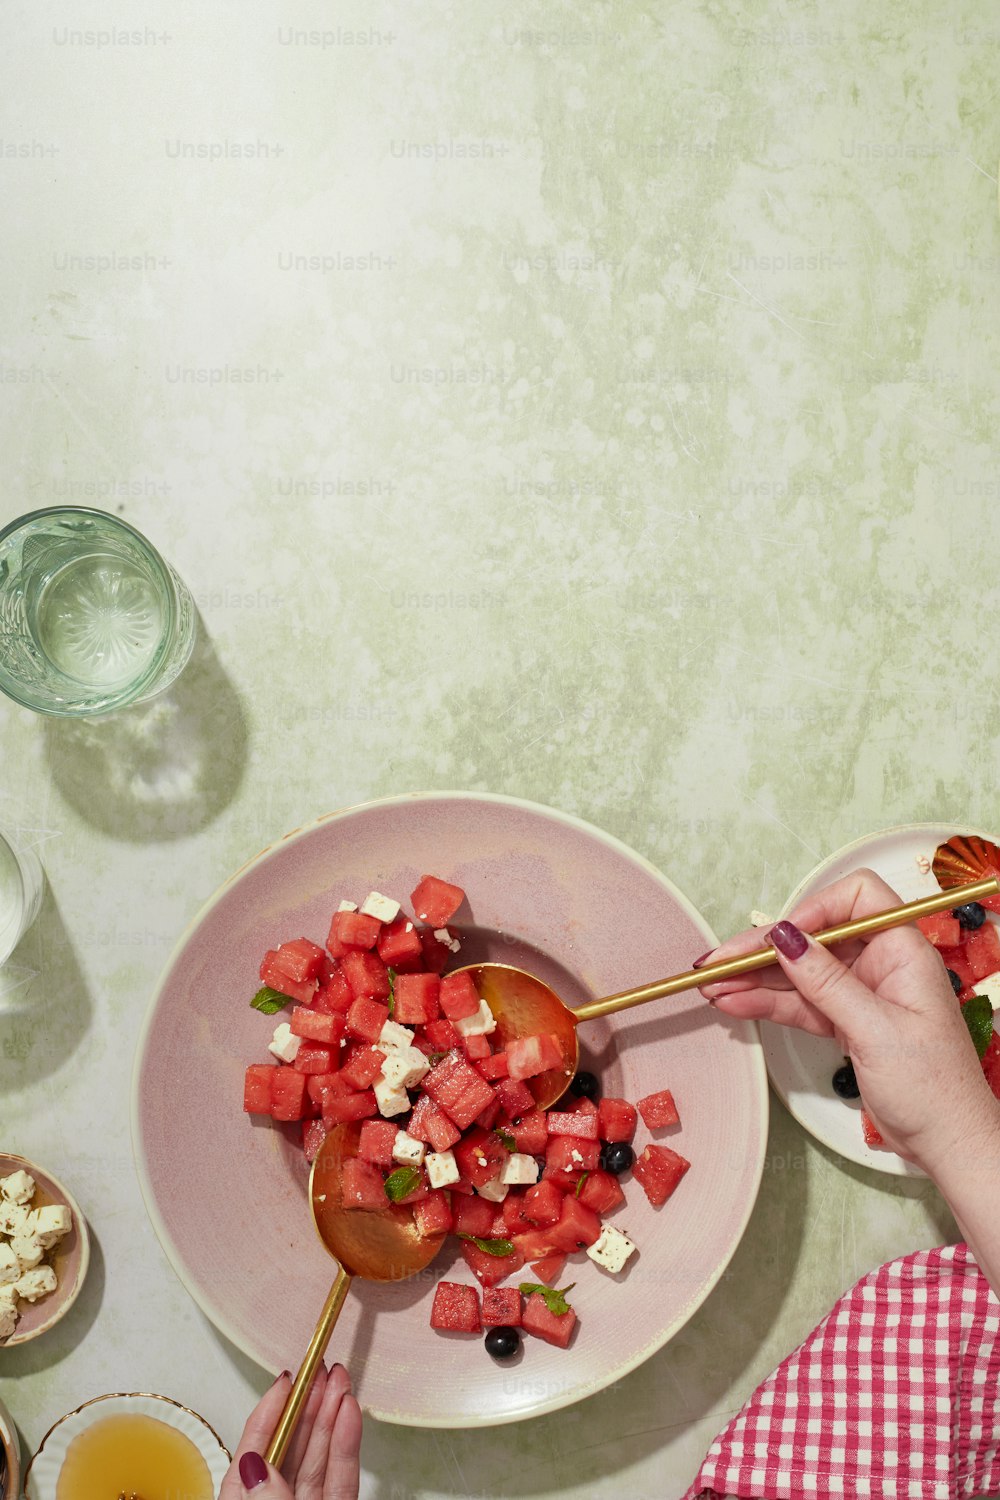 una persona comiendo una ensalada en un plato con una cuchara